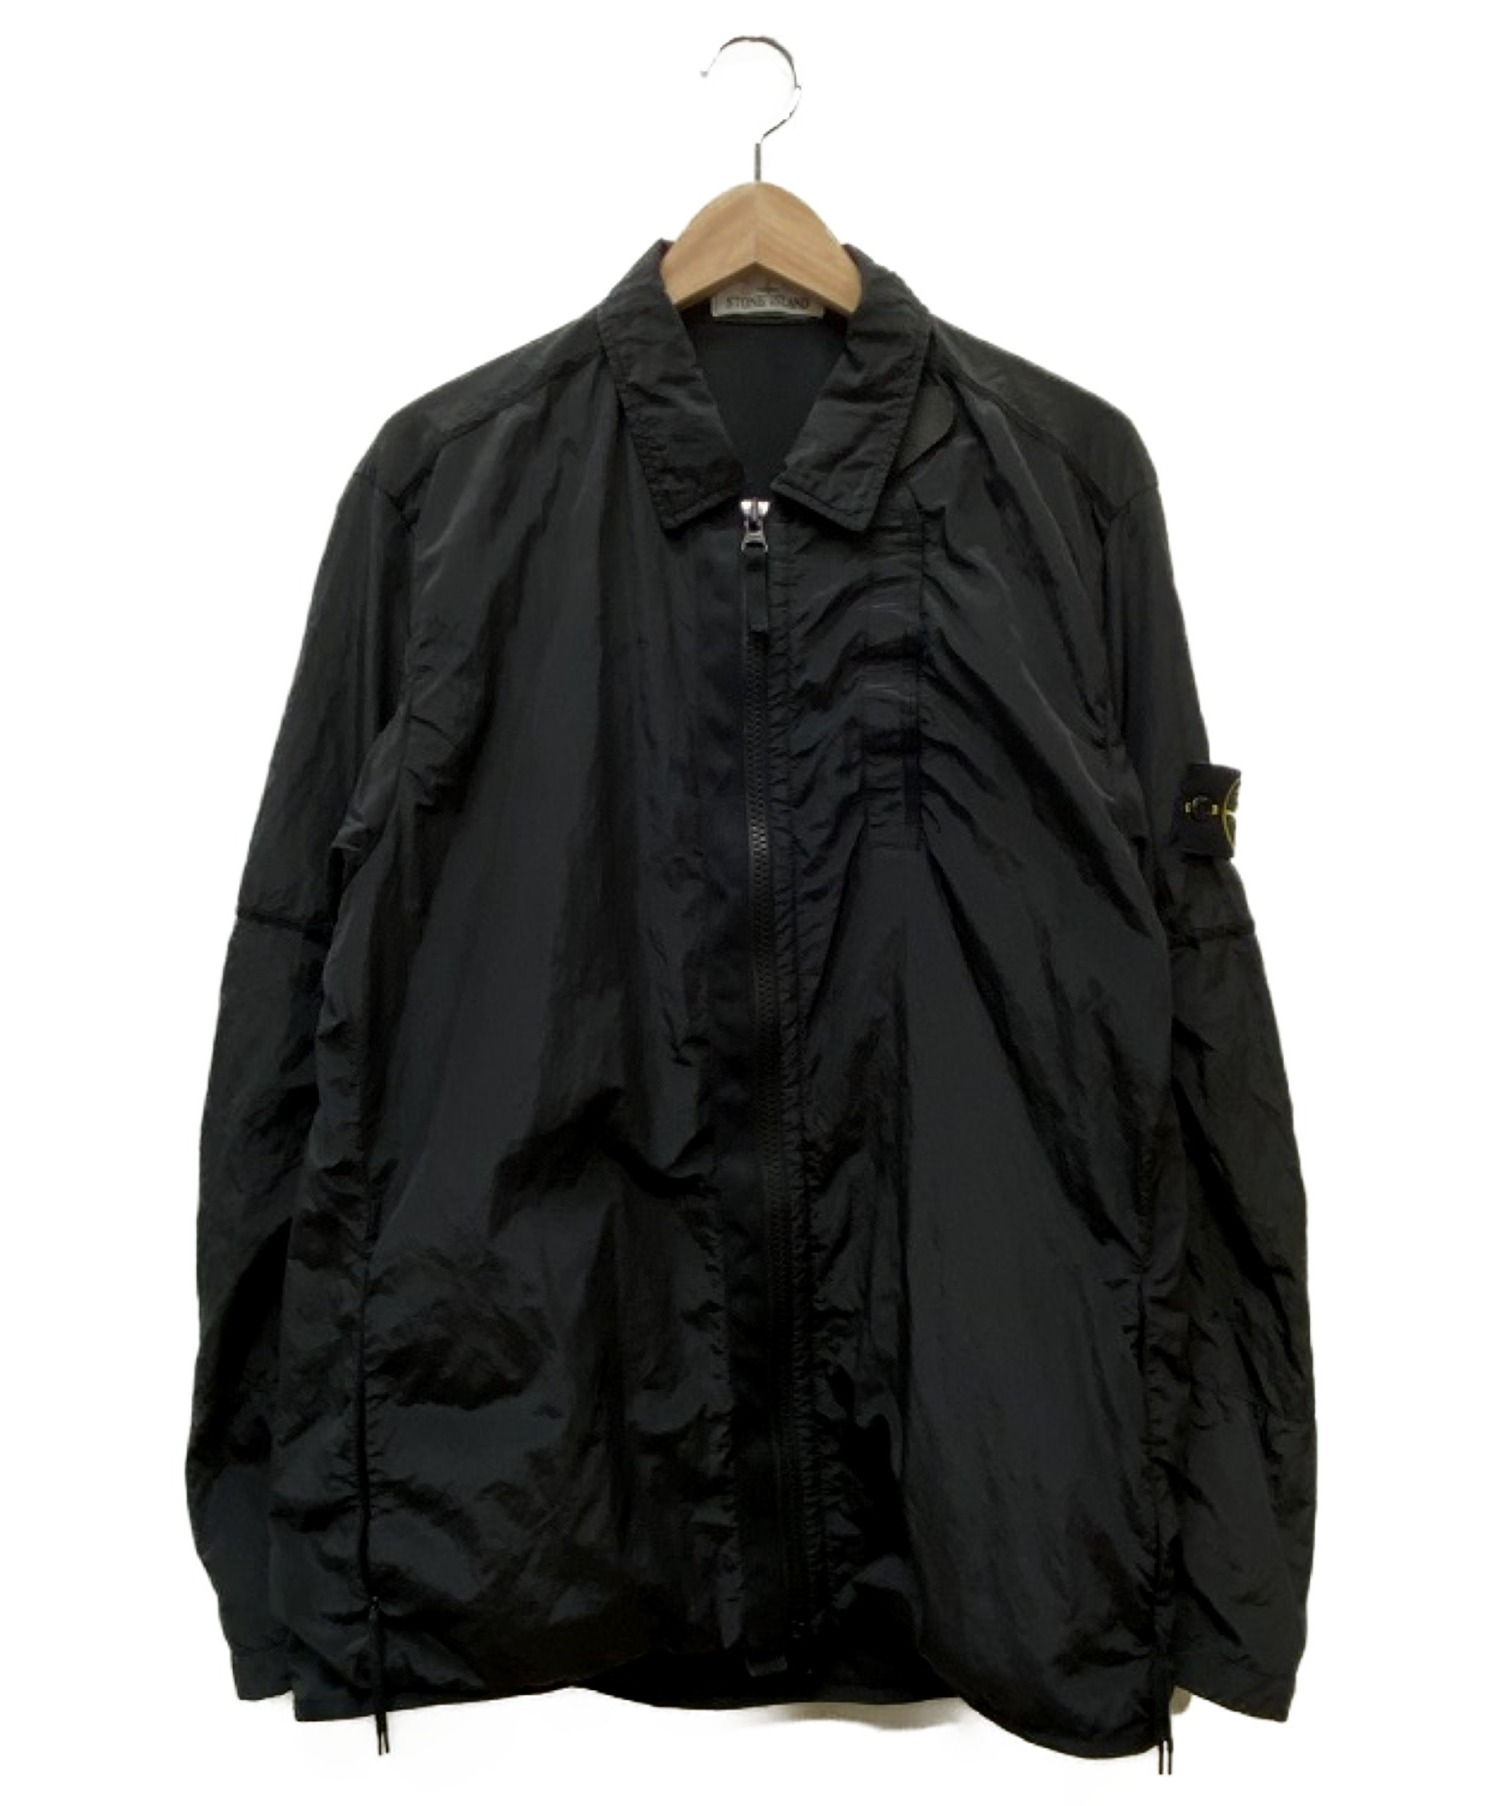 STONE ISLAND (ストーンアイランド) ナイロンメタルジャケット ブラック サイズ:SIZE L